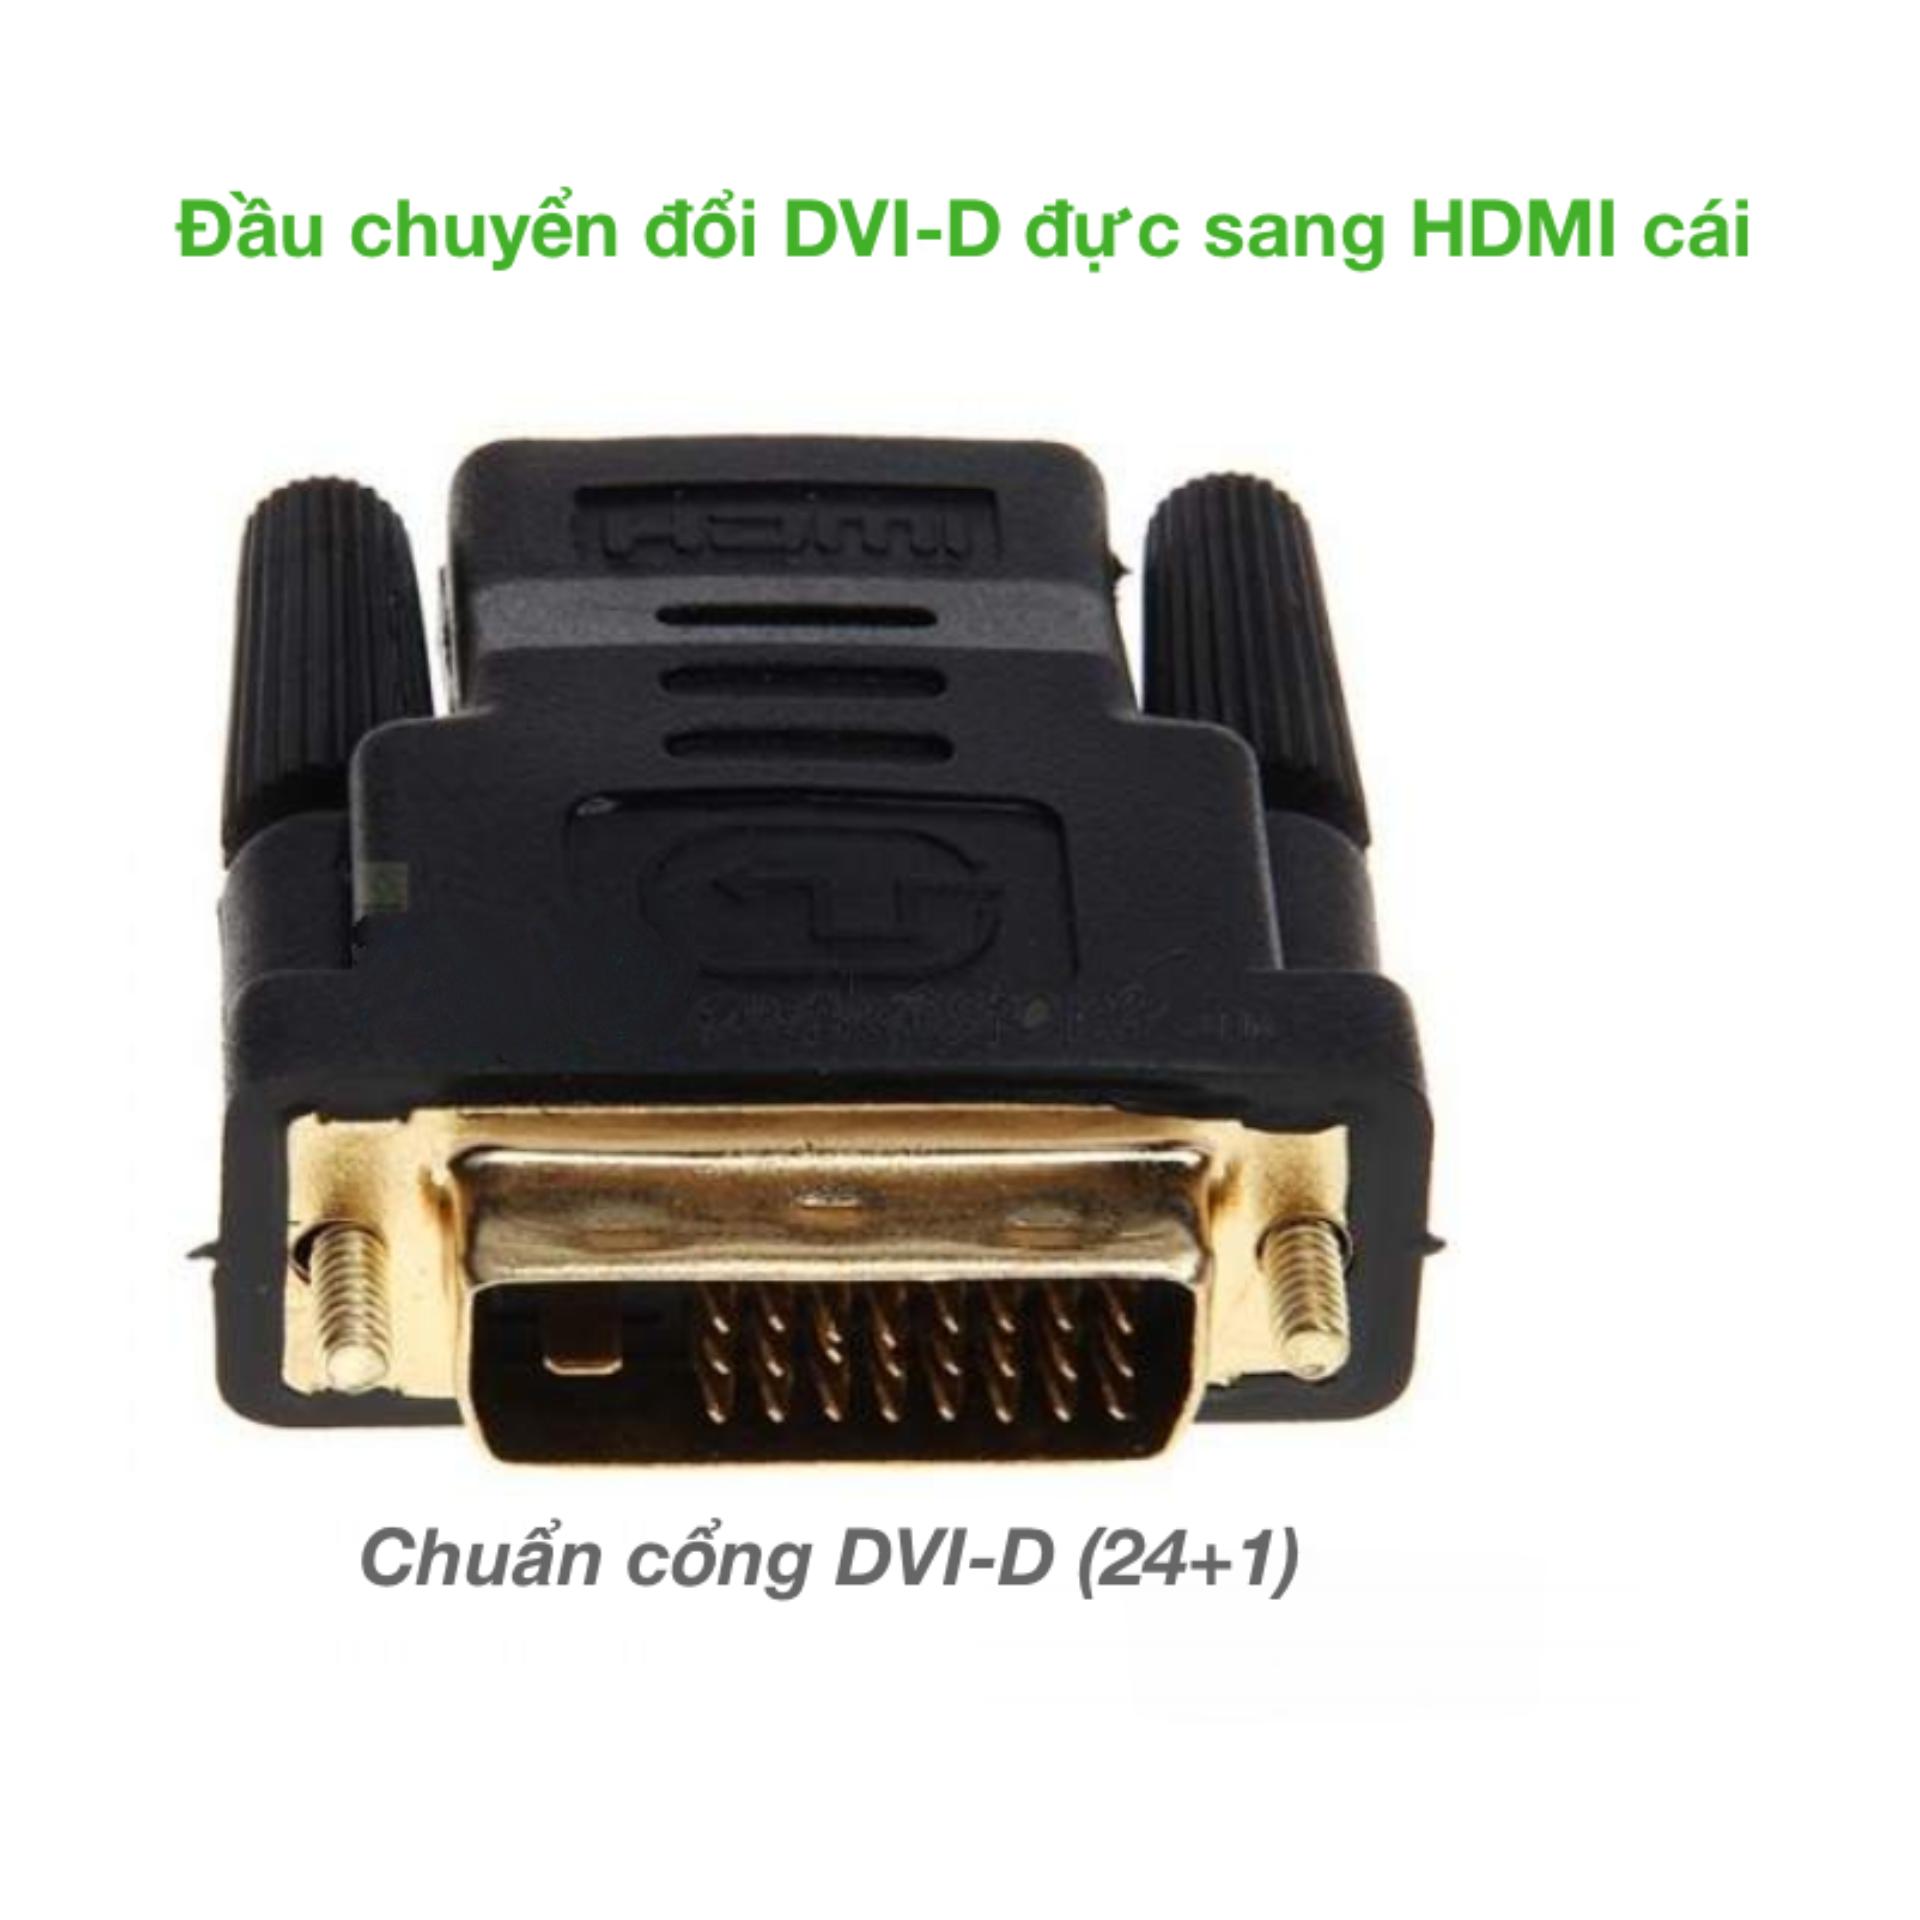 Đầu chuyển đổi DVI-D (24+1) cổng đực sang HDMI cổng cái (DH01) (Màu đen)